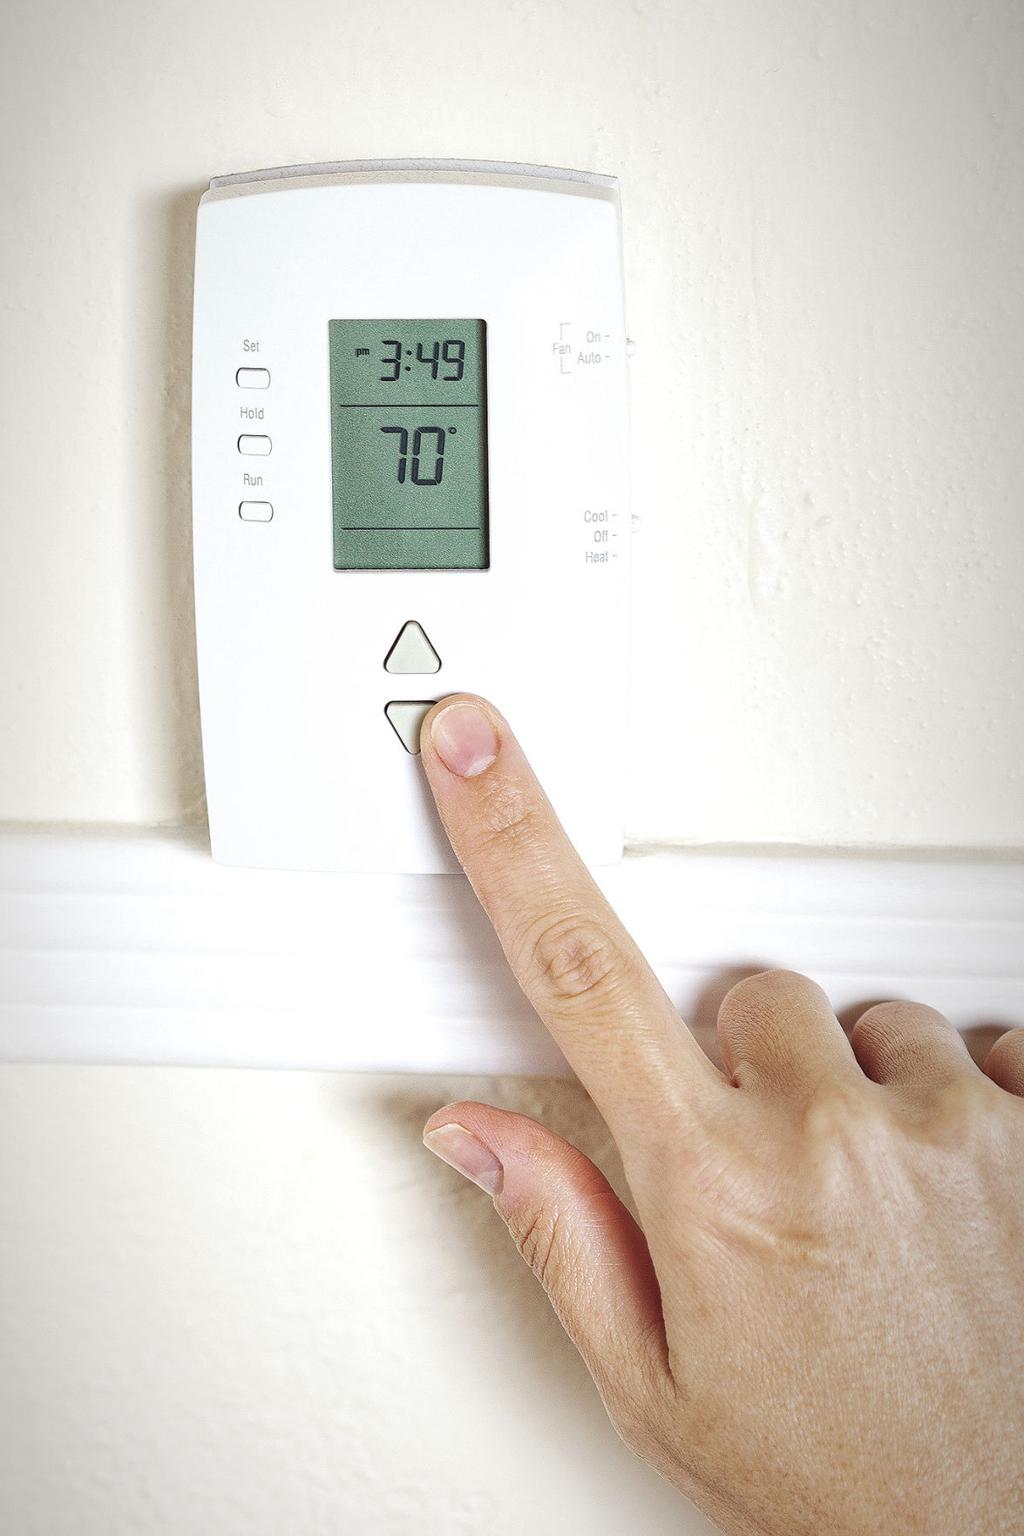 ¿Es mejor rechazar el termostato por la noche?